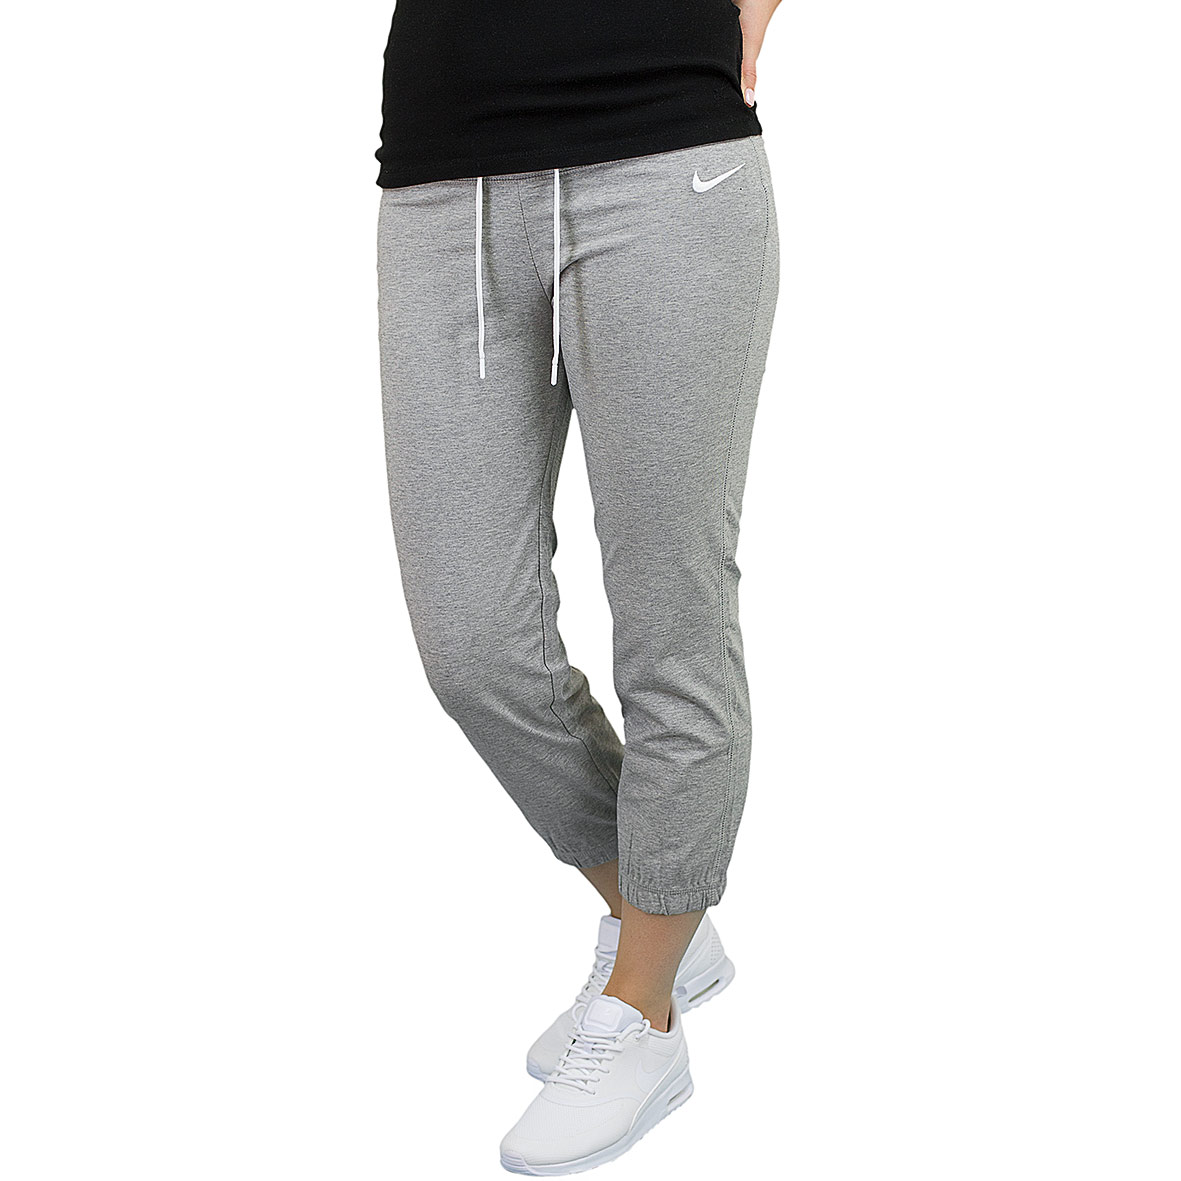 ☆ Nike Damen Sweatpants Capri Jersey dunkelgrau/weiß - hier bestellen!